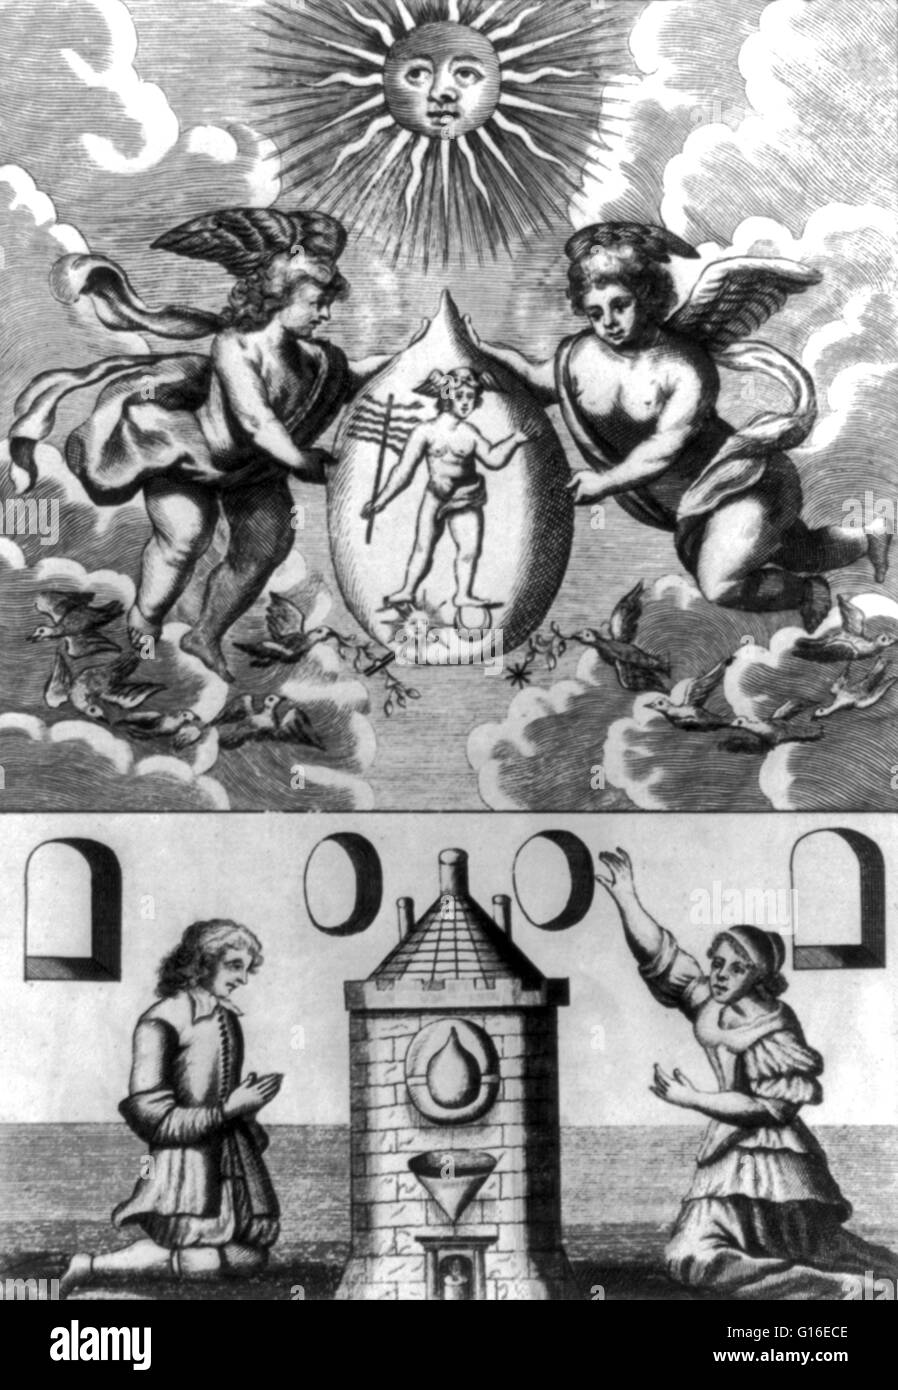 Titulado: "escena alquímico mostrando dos putti sosteniendo la piedra  filosofal que contenga imágenes de Hermes, por debajo del cual un hombre y  una mujer de rodillas ante el horno donde la transmutación